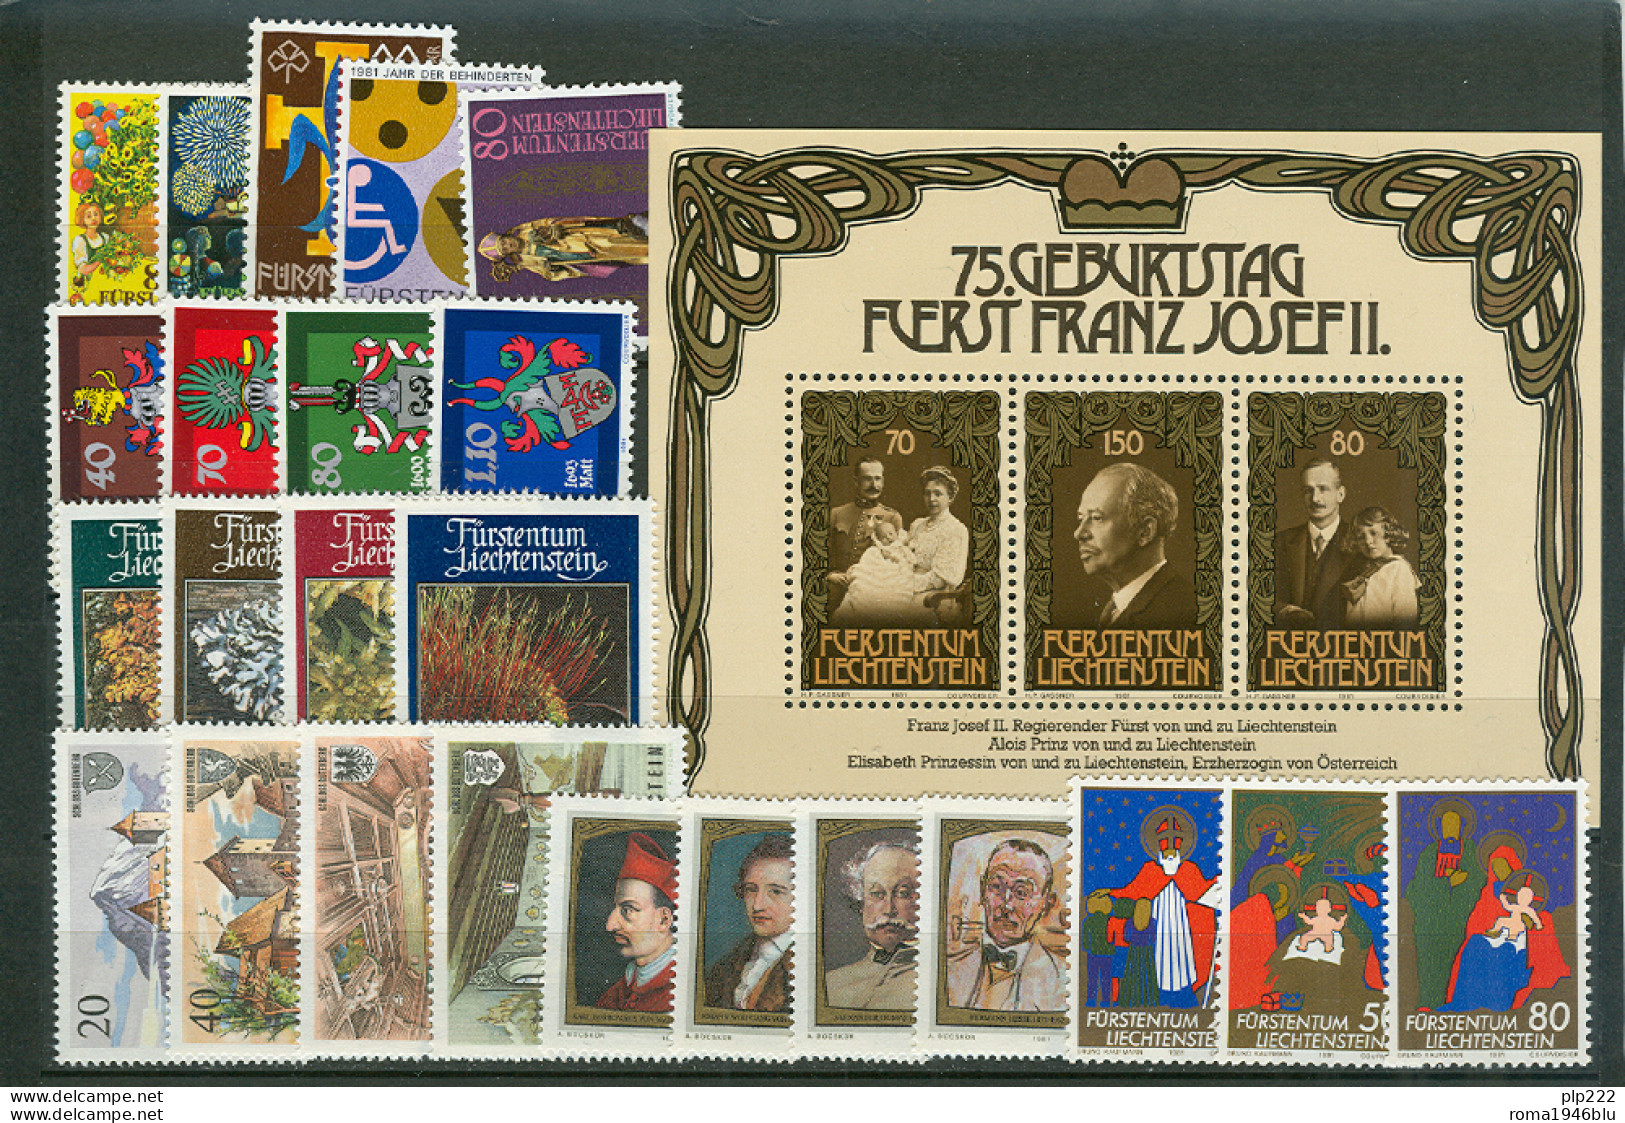 Liechtenstein 1981 Annata Completa / Complete Year Set **/MNH VF - Años Completos